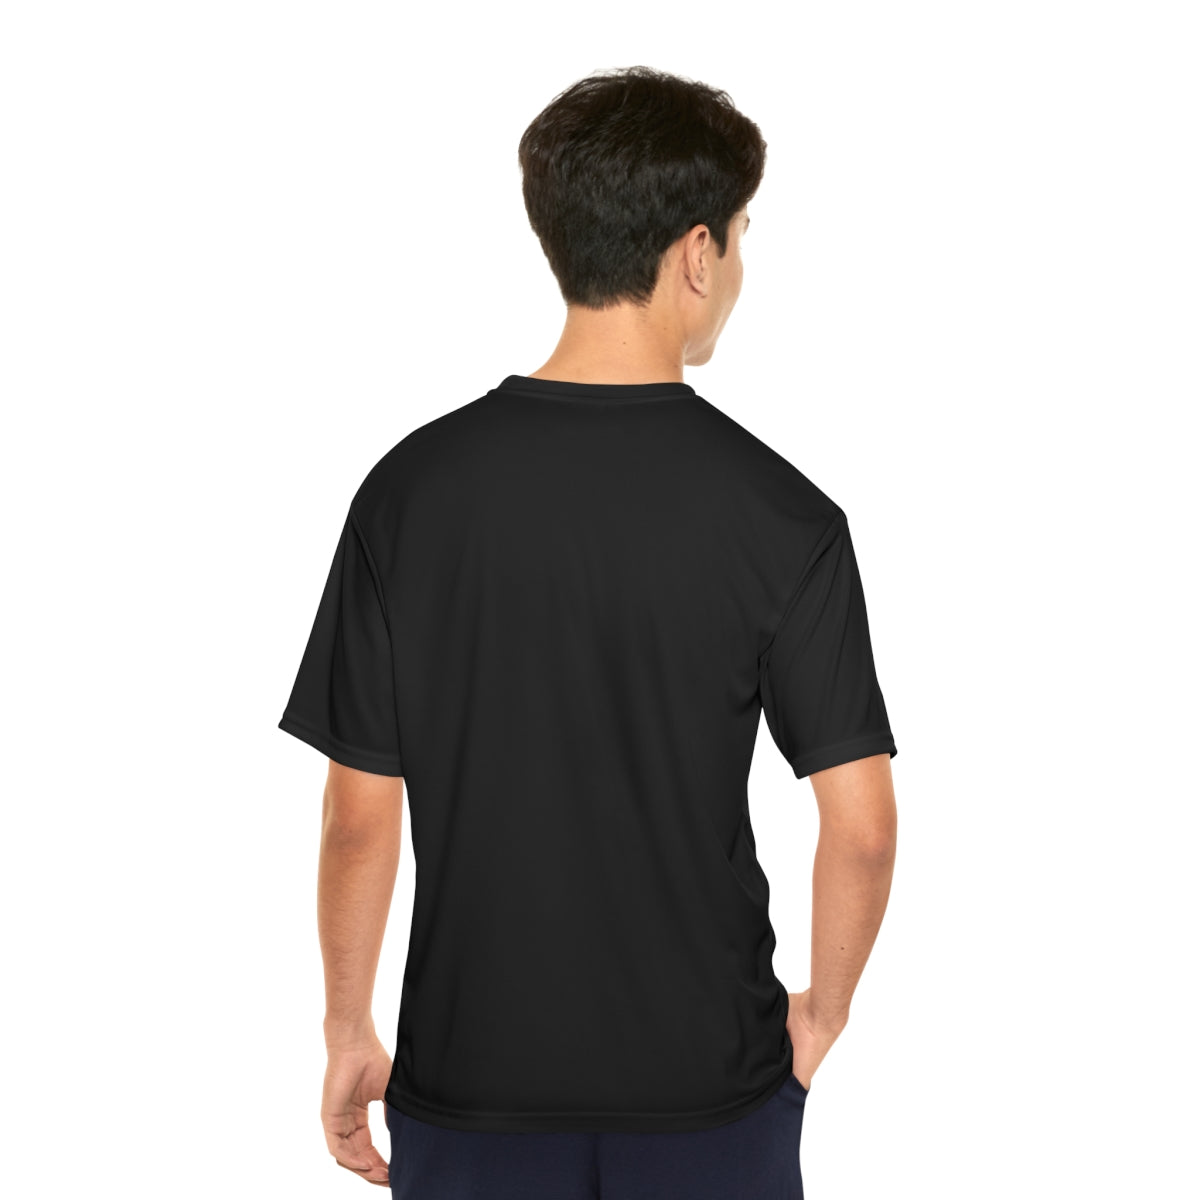 Freeburg Midgets Softball Performance T-Shirt